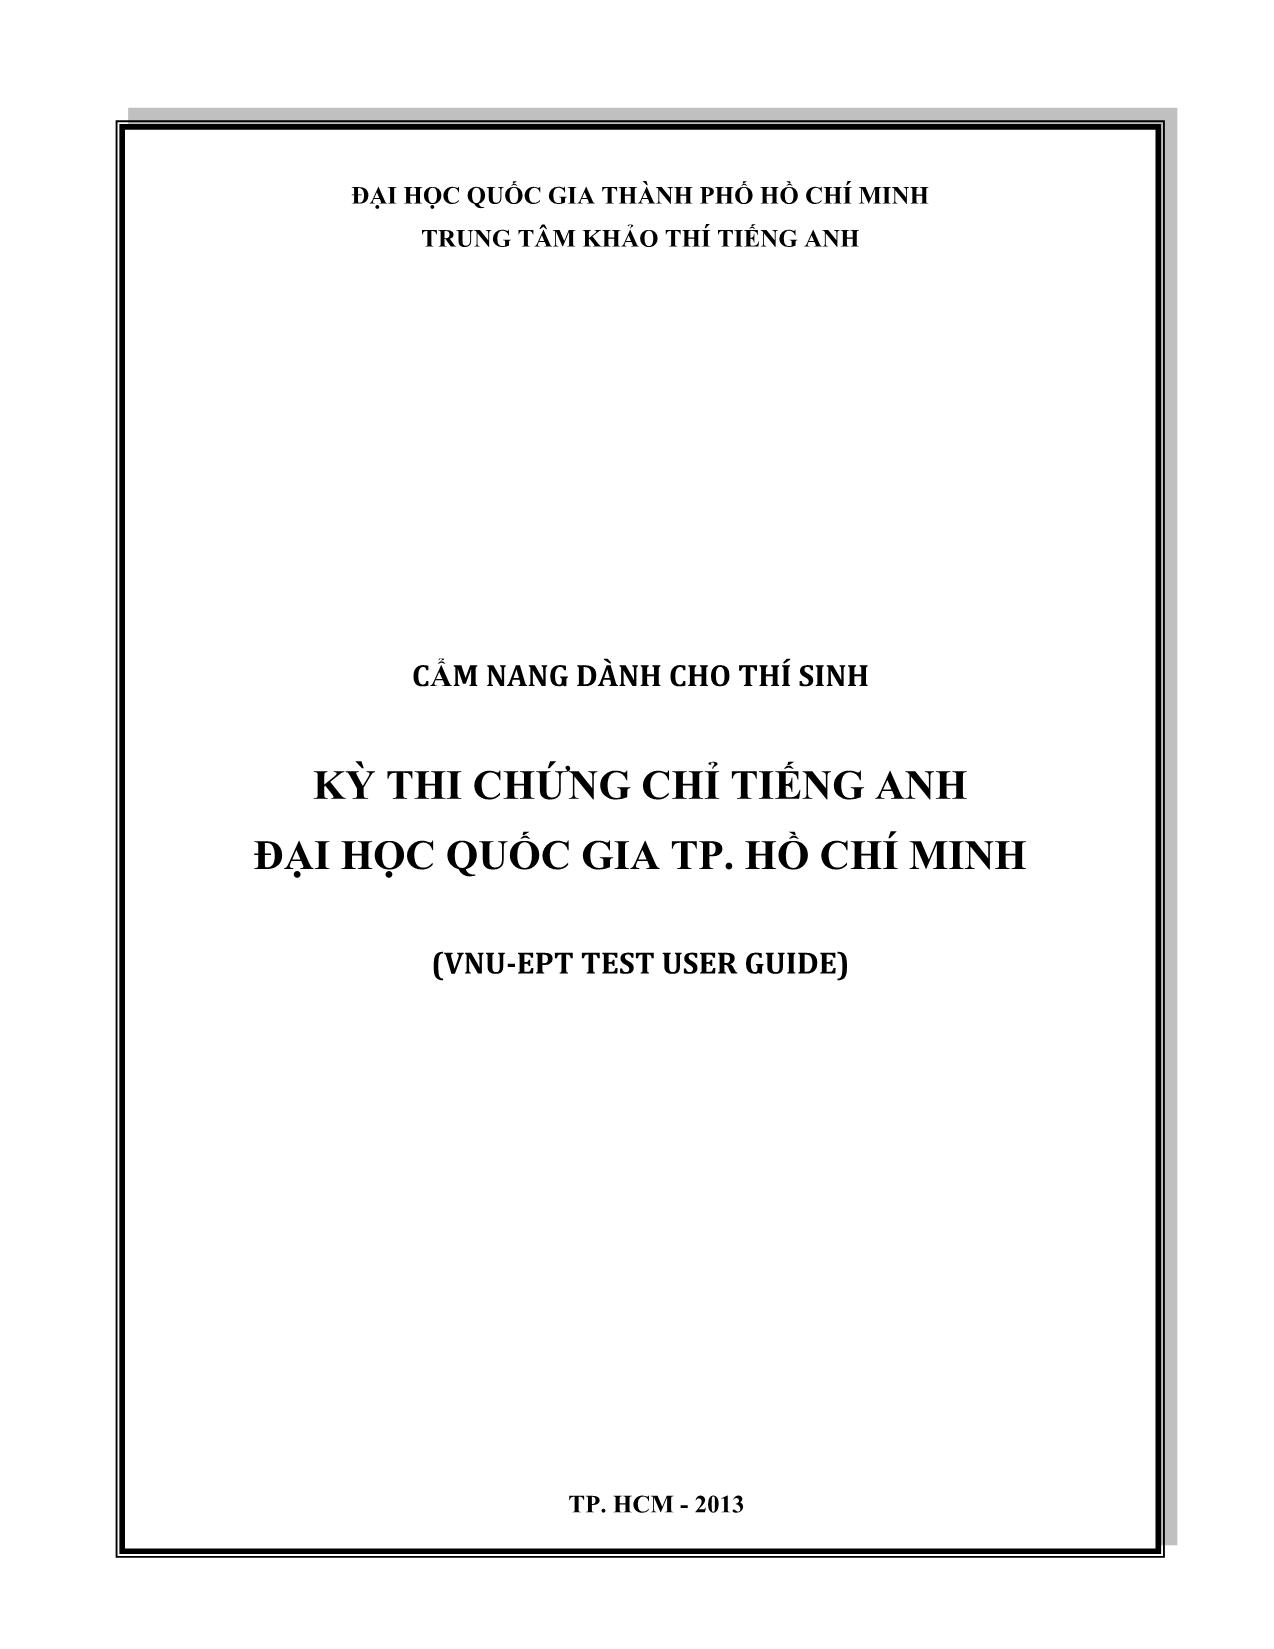 Kỳ thi chứng chỉ Tiếng Anh Đại học quốc gia thành phố Hồ Chí Minh trang 1